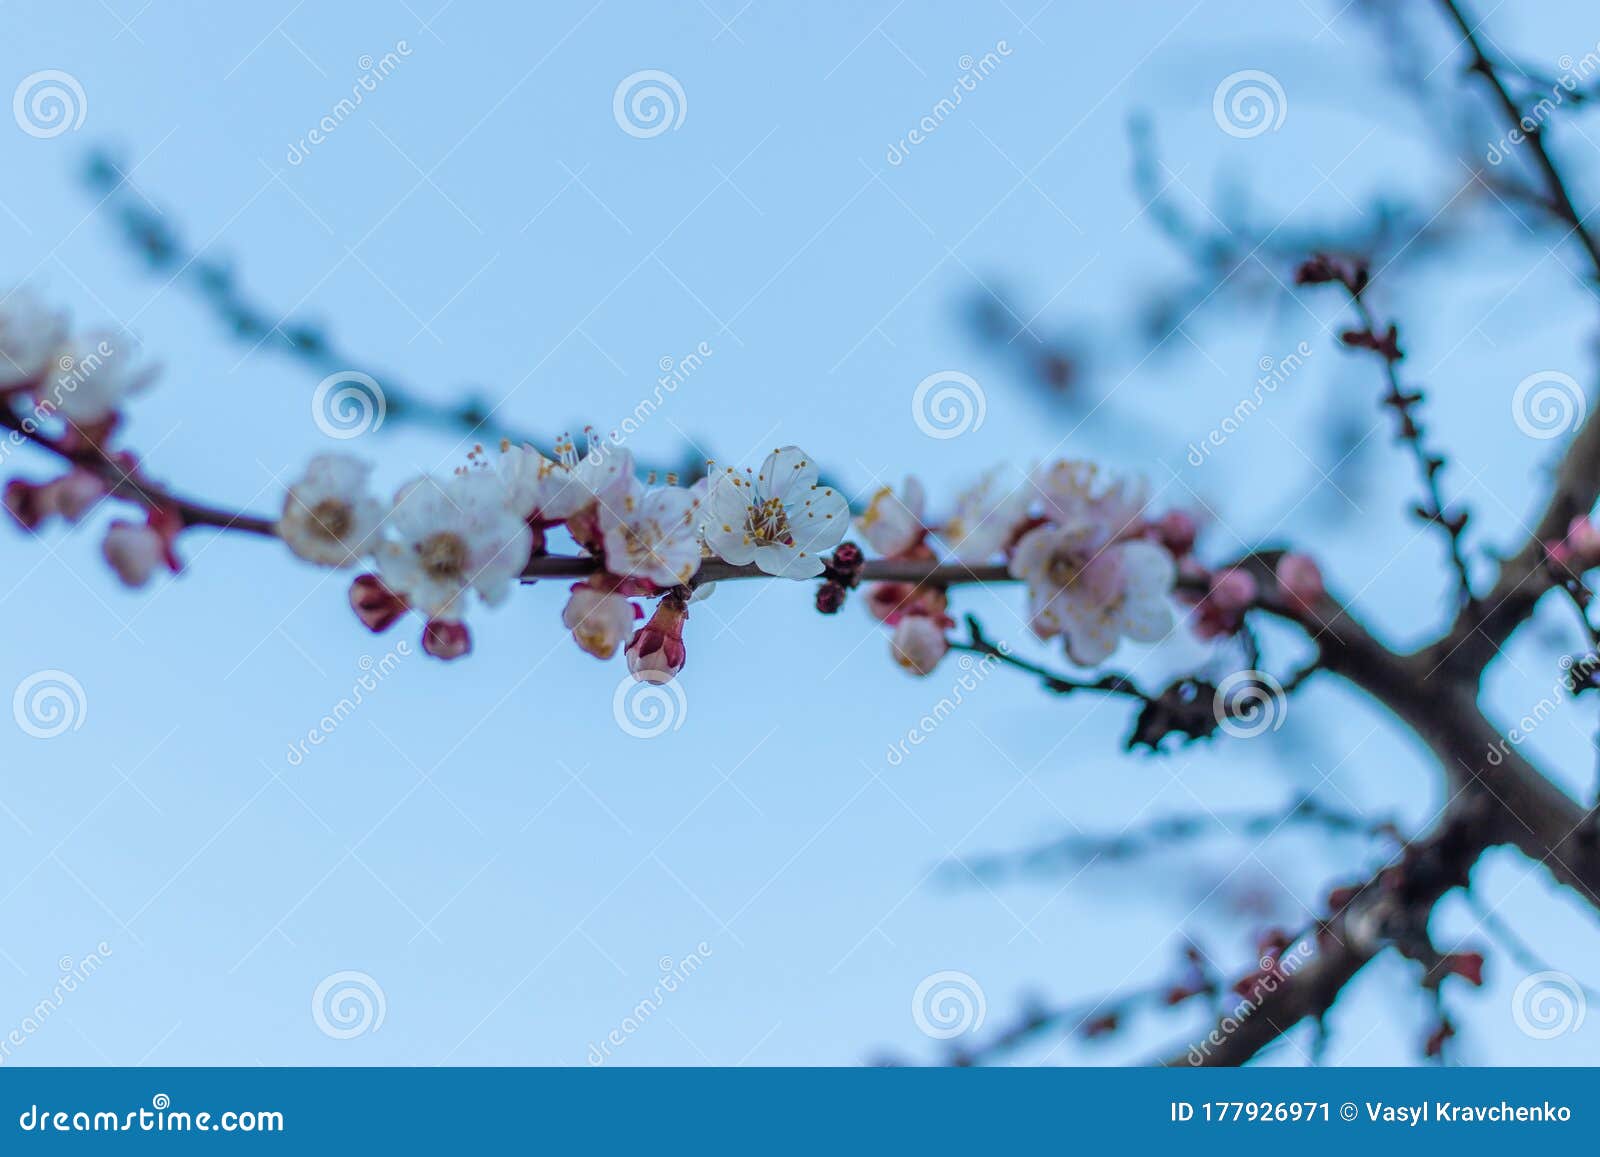 绿色园林中白粉绣球花 库存图片. 图片 包括有 八仙花属, 开花, 增长, 户外, 绽放, 植物群, 花卉 - 176544641